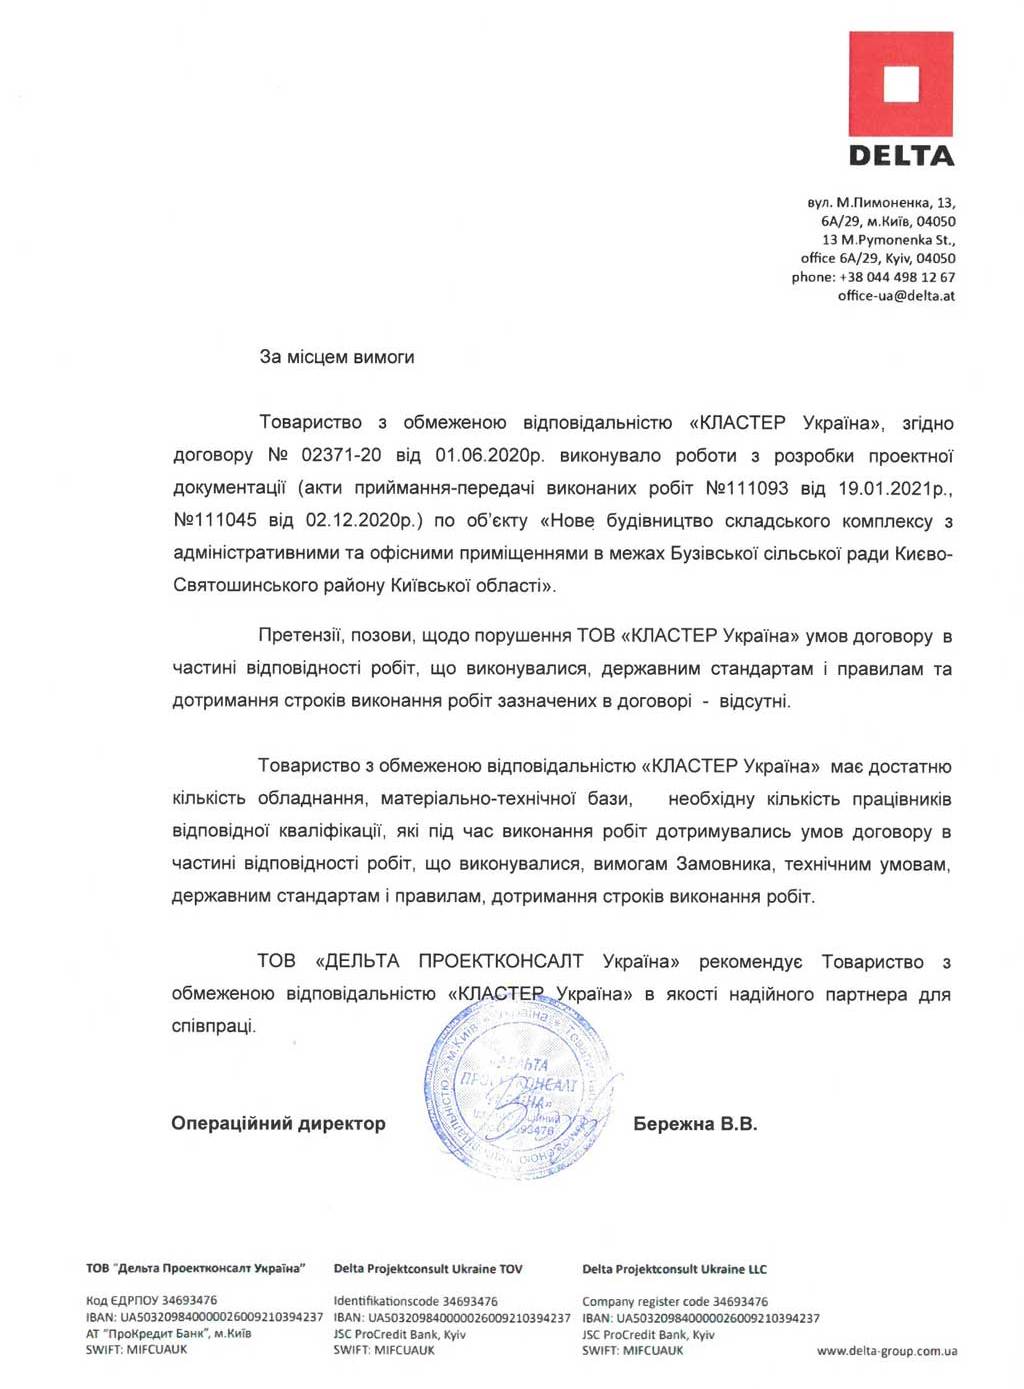 Рекомендательное письмо от OOO «ДЕЛЬТА Проектконсалт Украина»